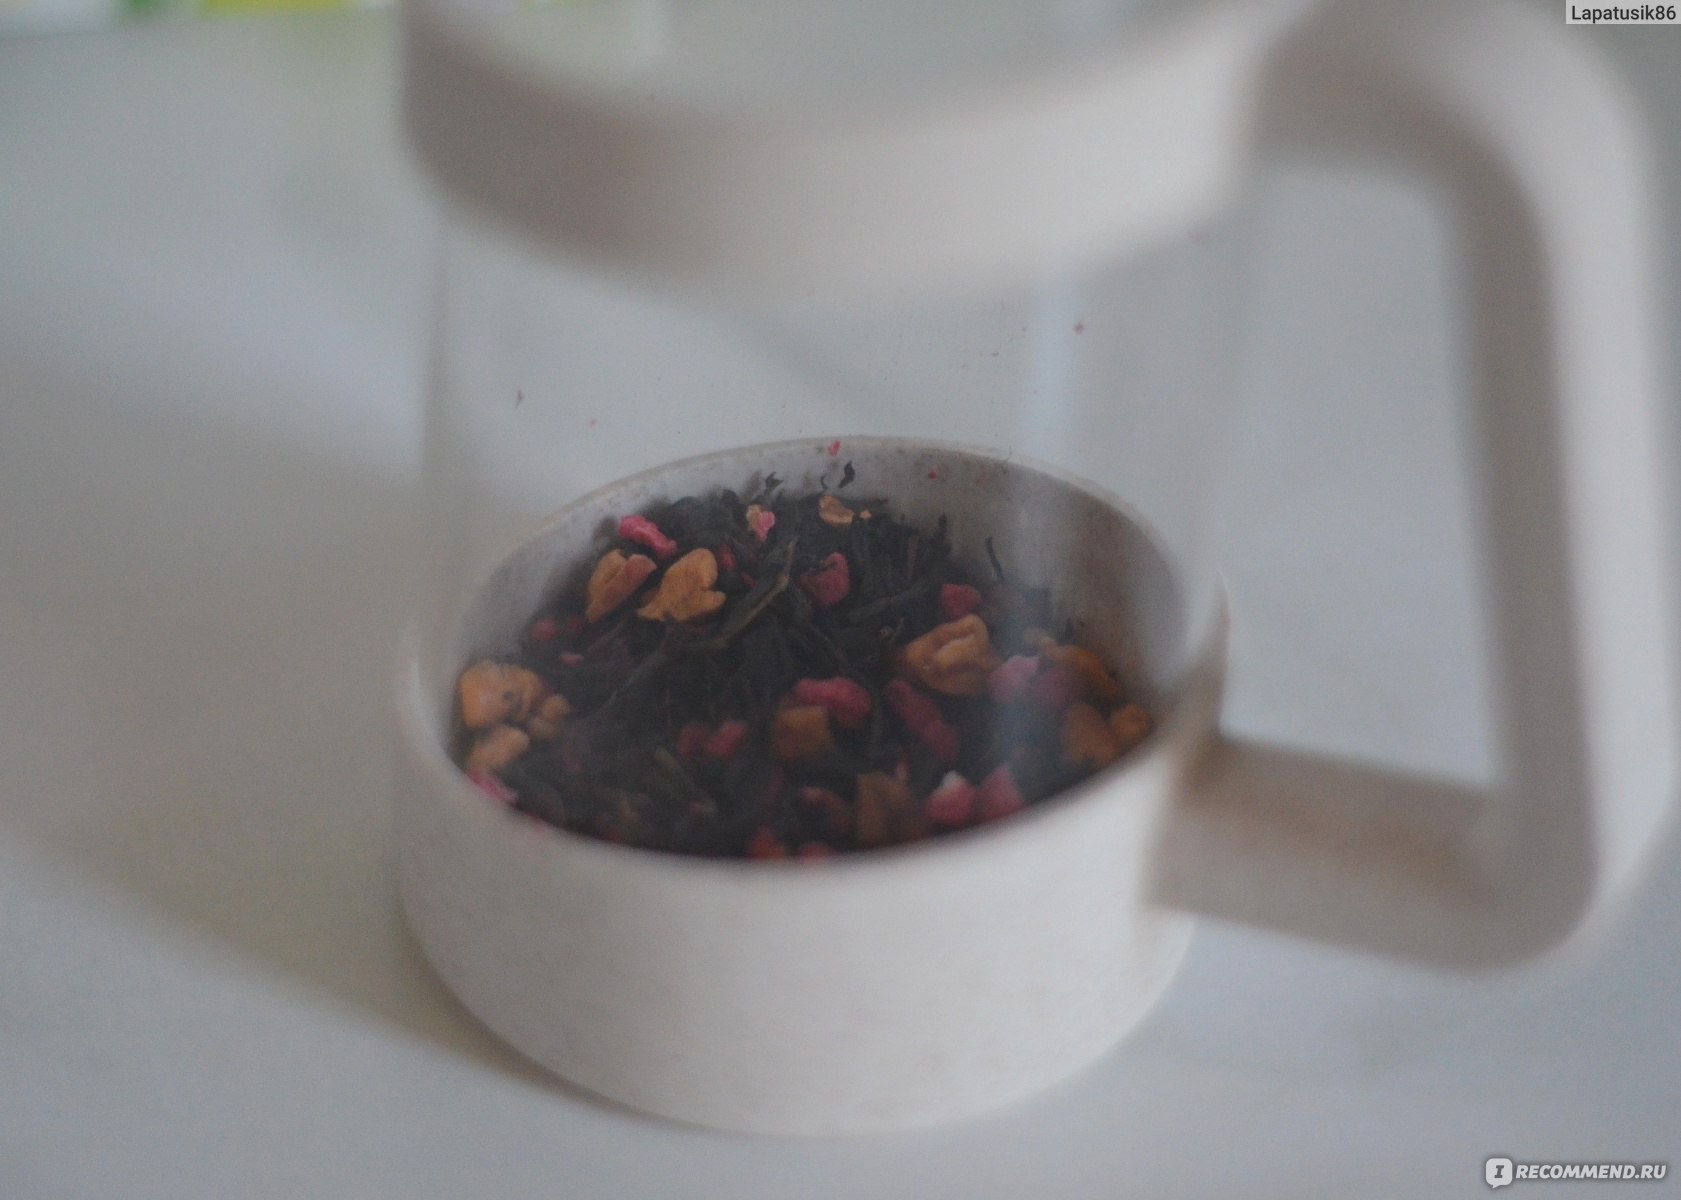 Актуальный бабушкин рецепт: почему нужно пить травяной чай